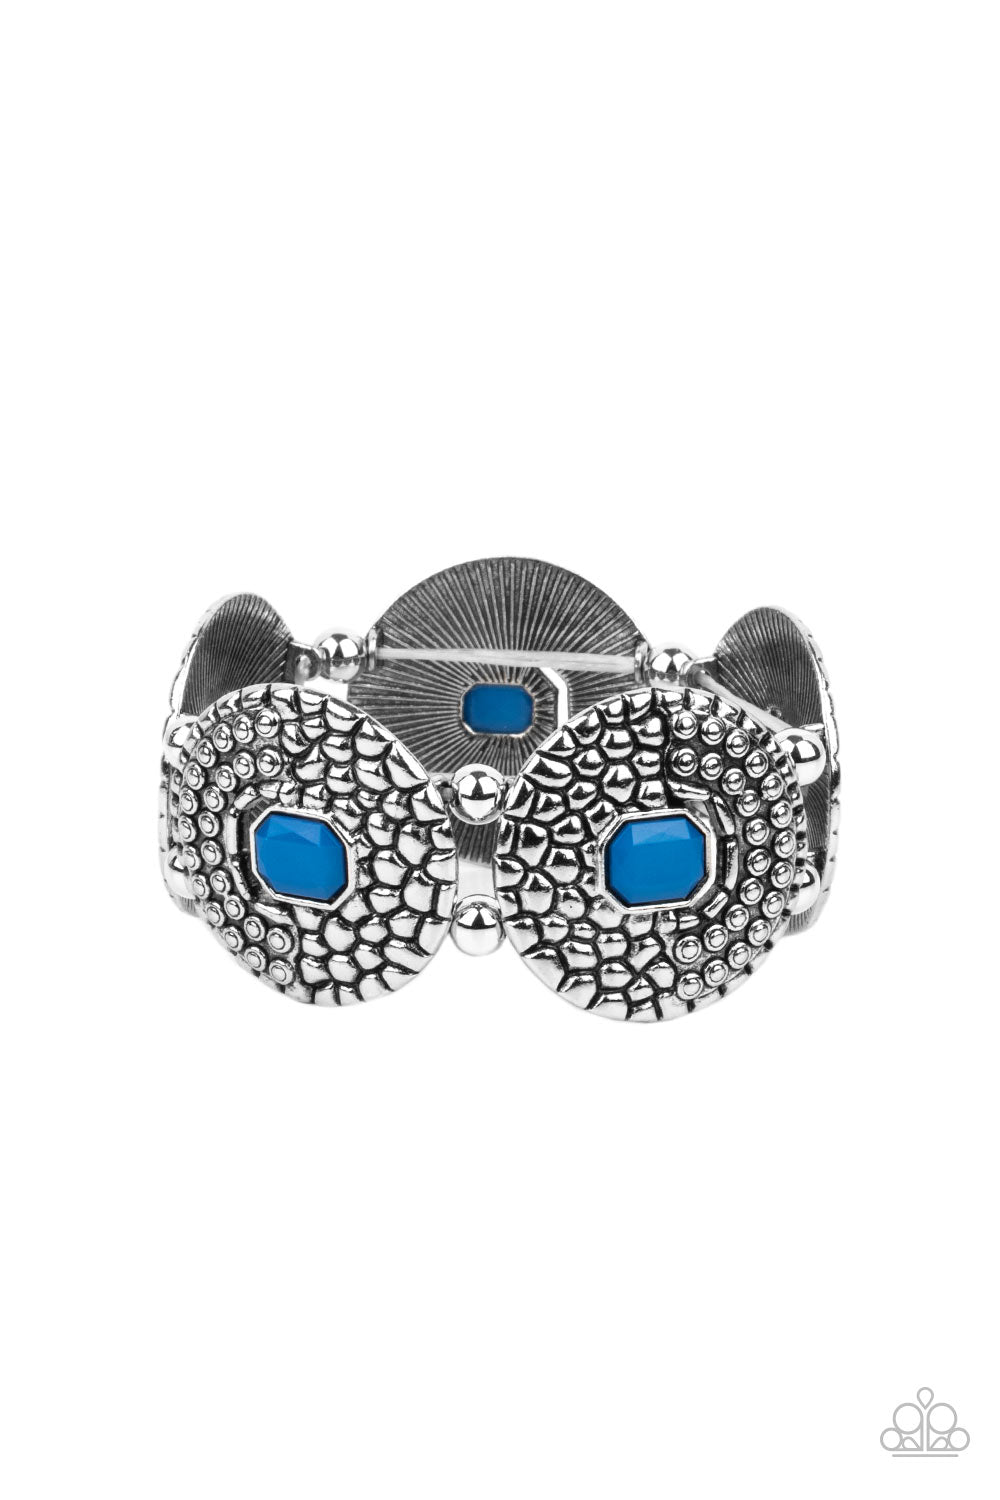 Prismatic Prowl - Blue Bracelet- Paparazzi Accessories - Paparazzi Accessories 